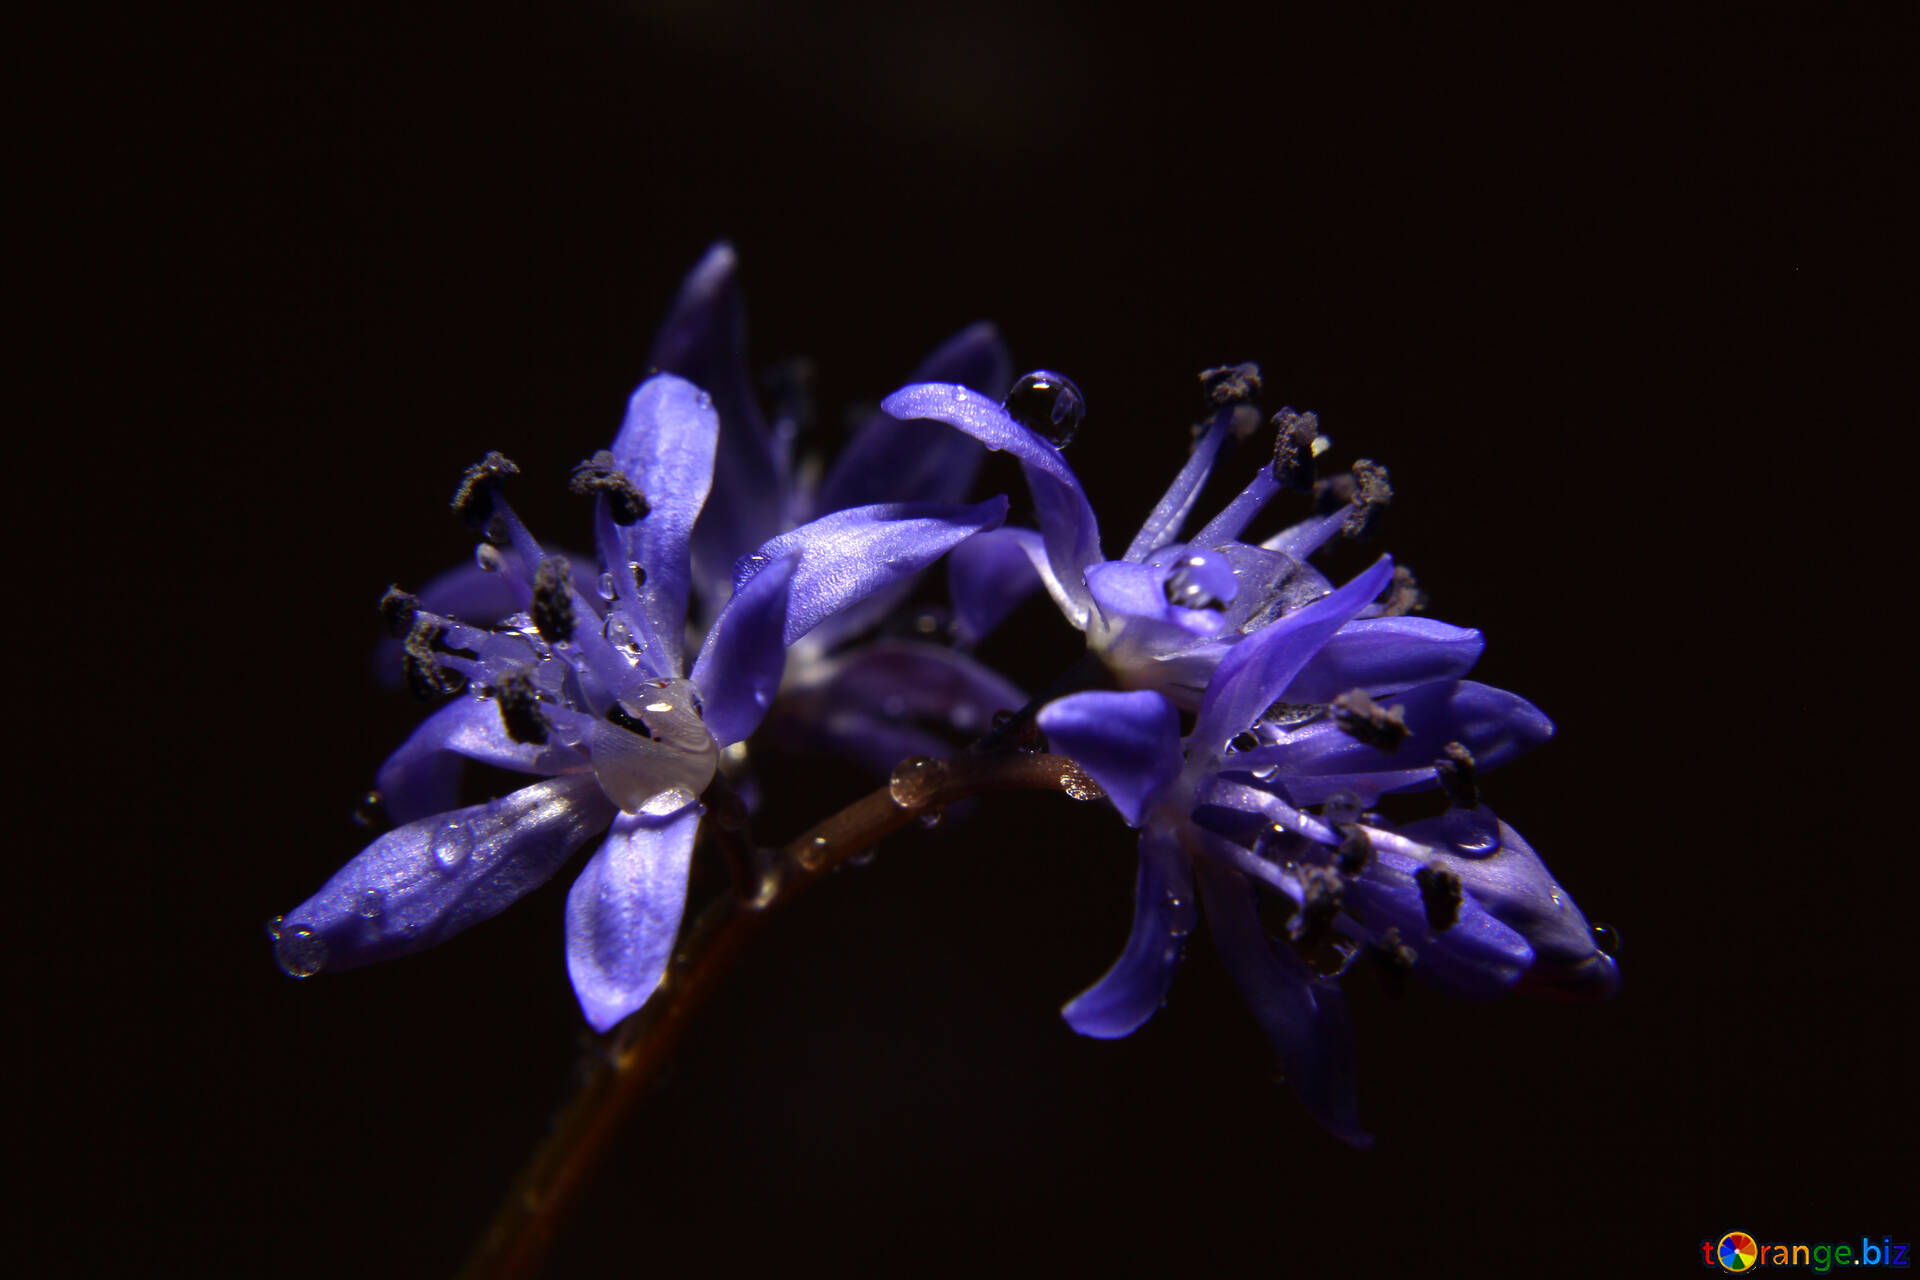 ブルーの花 無料の写真 花で監視する暗い背景 無料の写真 夏 397 Torange Biz